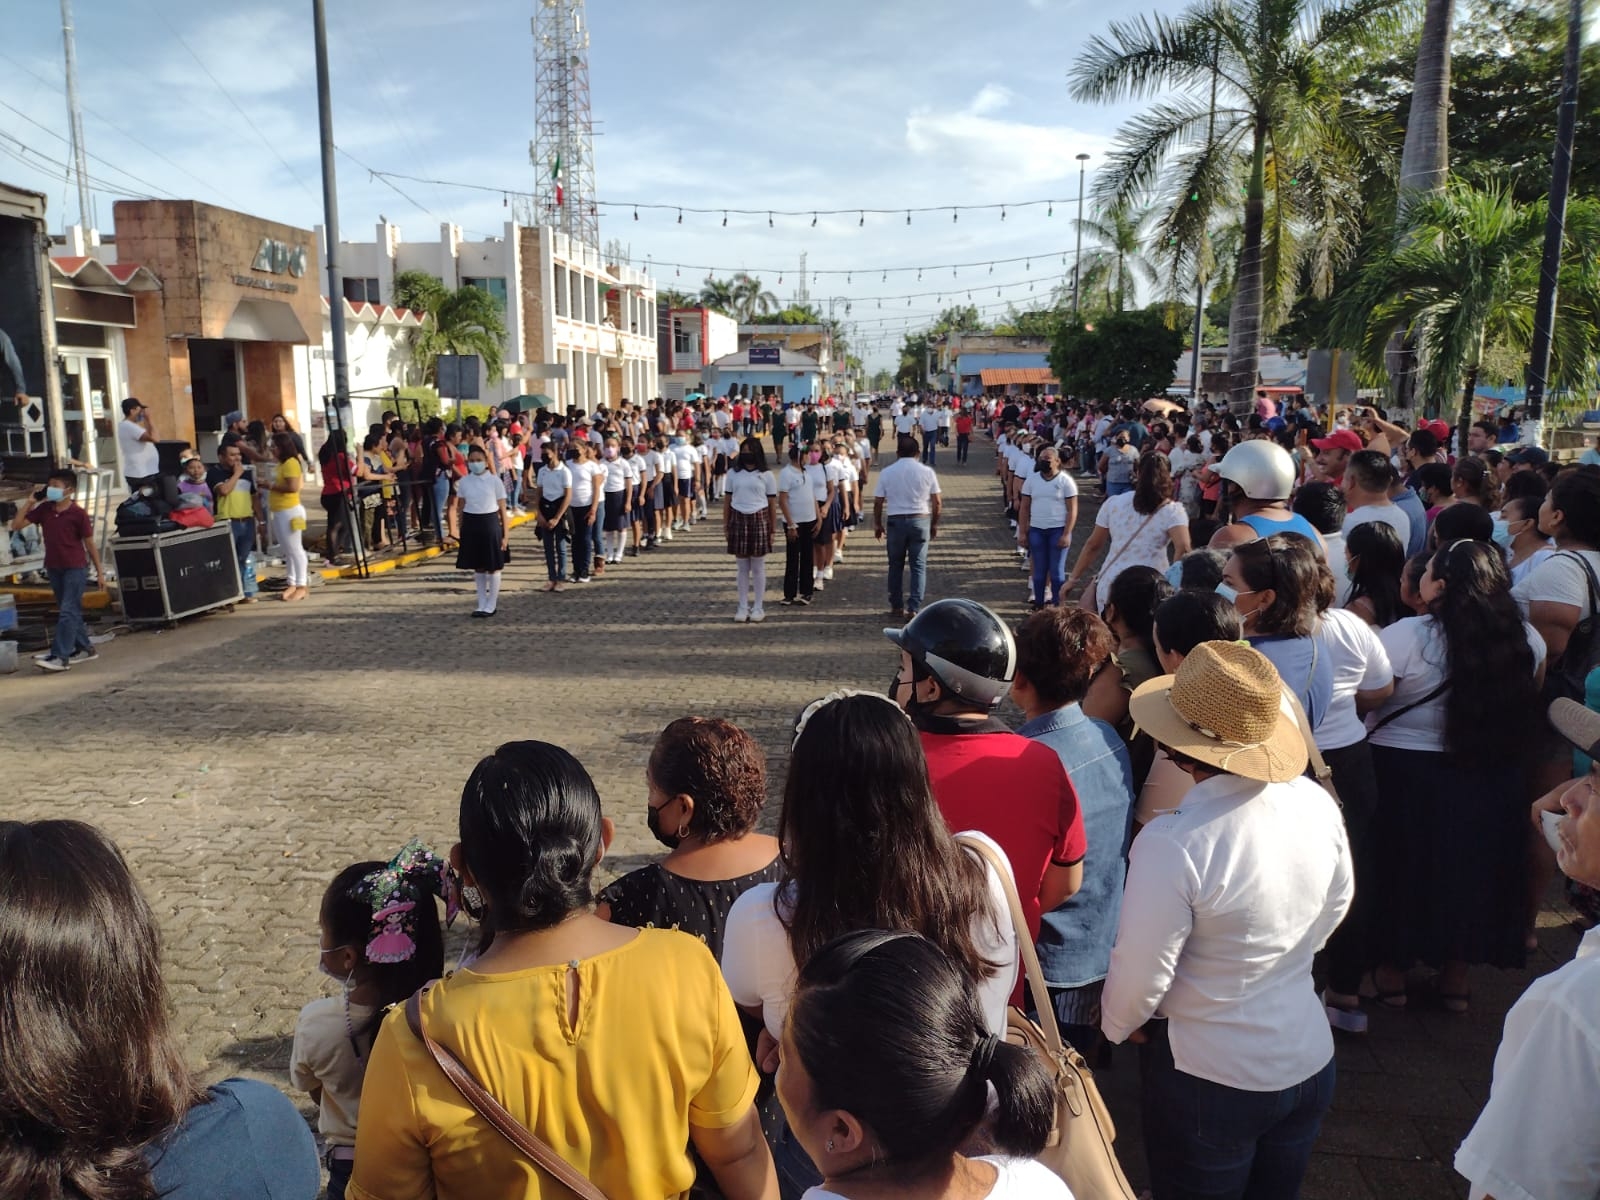 Los alumnos marcharon por la avenida Benito Juárez, pasando por el Ayuntamiento de Carrillo Puerto, donde los esperaban vecinos de la zona